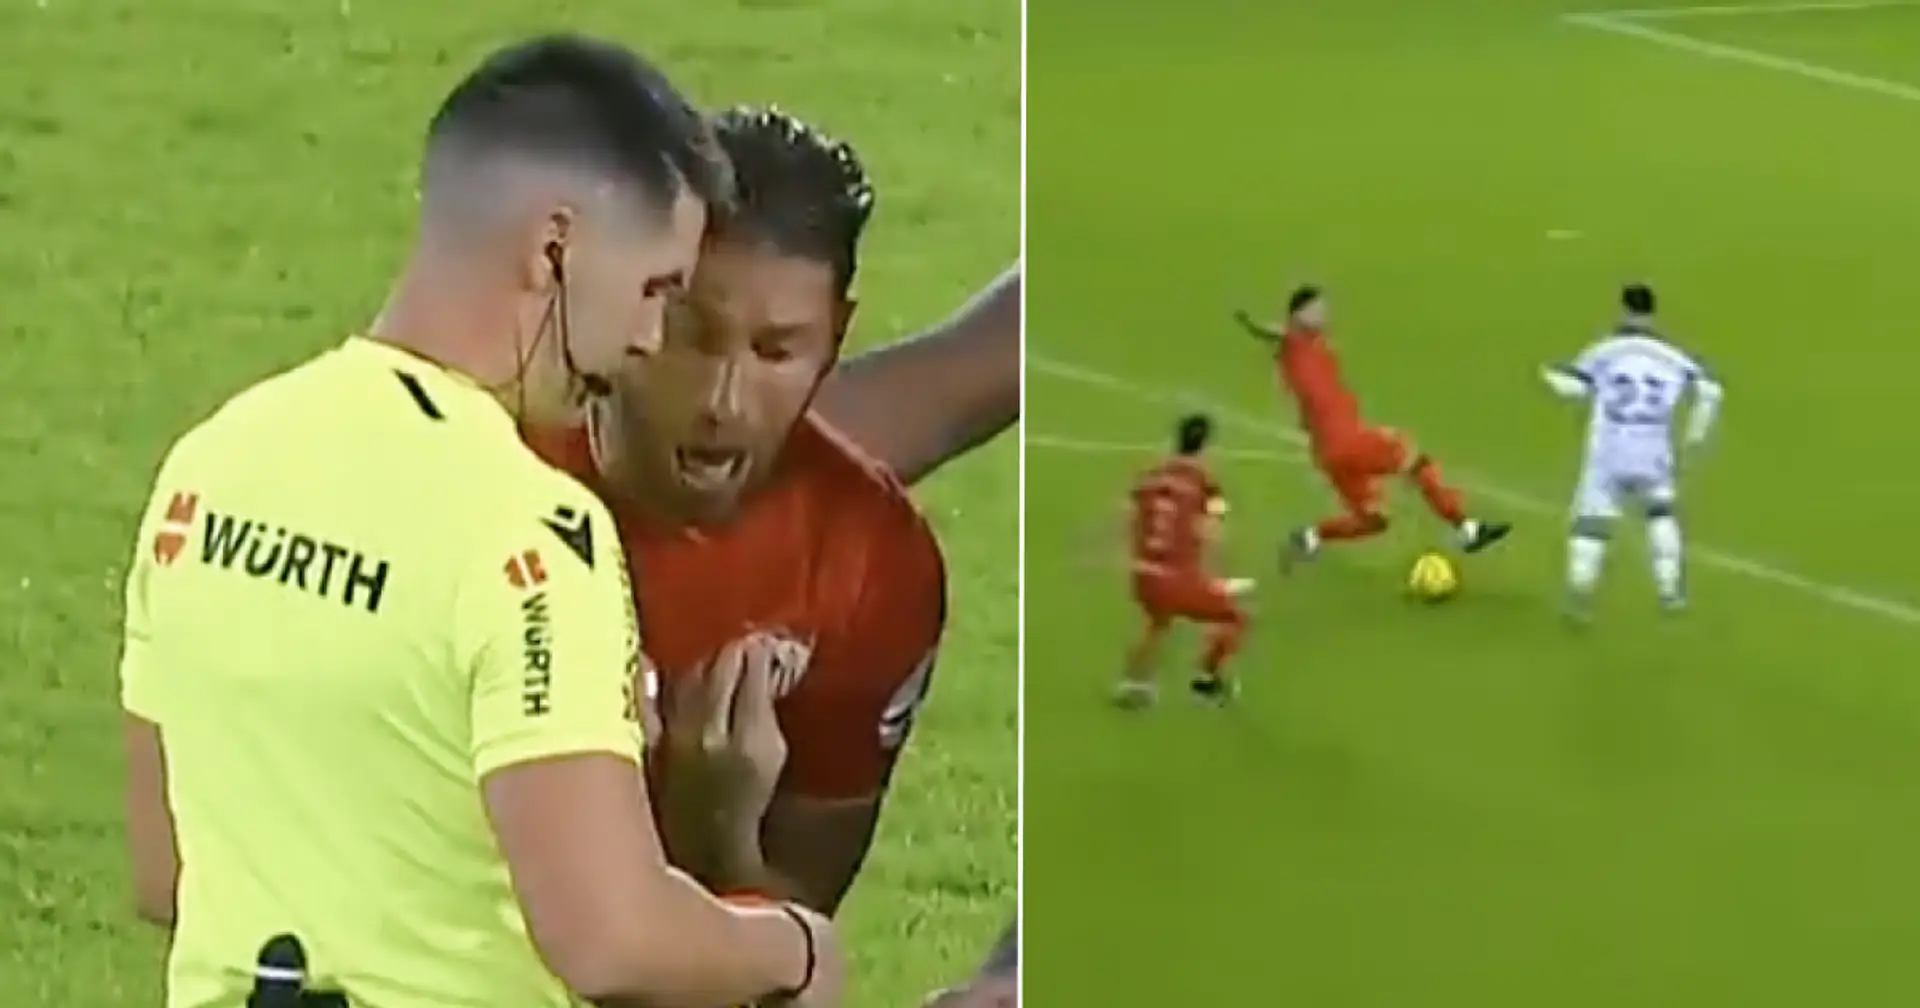 Visto: Ramos le ruega al árbitro que revise el VAR tras recibir una tarjeta amarilla, sucede algo extraño después